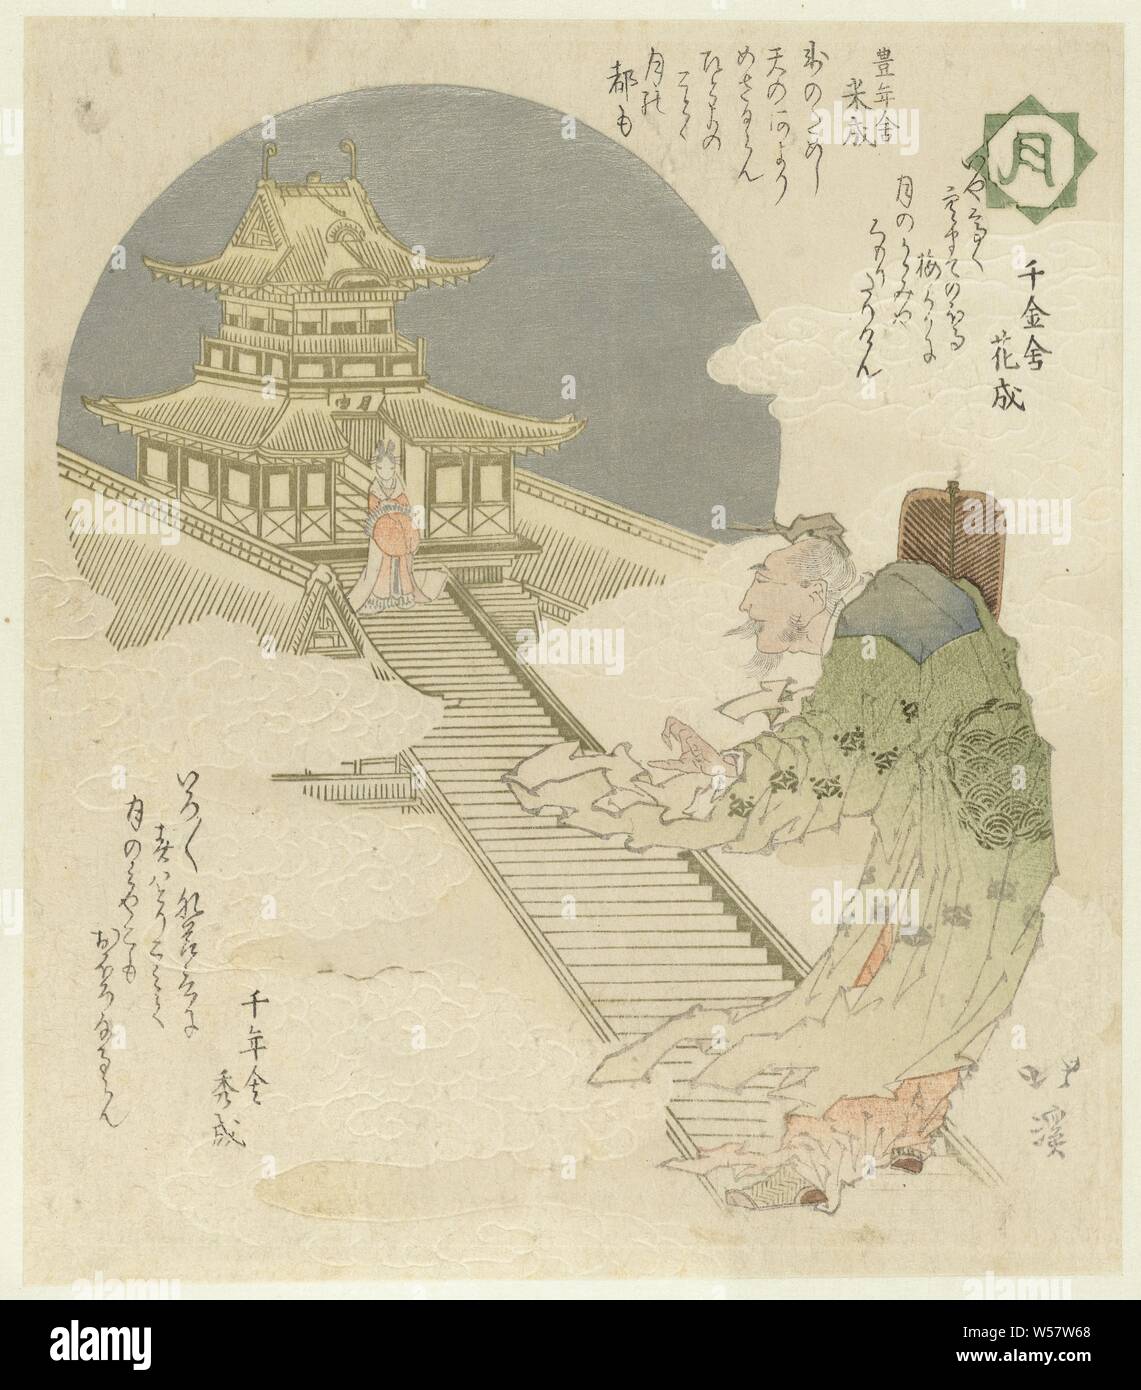 Lune Tsuki (titre sur l'objet) des fleurs, des oiseaux, du vent et de la lune (titre de la série) Kachôfûgetsu (titre de la série sur l'objet), un vieil homme avec un ventilateur dans sa main droite, se trouve au fond d'un long escalier. En haut de l'escalier est une dame en face d'un pavillon. L'homme est l'empereur chinois (Hsüang Gensô Tsung, 685-762) et la femme sa concubine favorite (Yôkihi Yang Kuei-fei, 719-56). Ici leur rencontre dans l'Au-delà est représenté, Yôkihi a été exécuté après sa famille et elle a gagné trop de pouvoir. Mesurer trois poèmes., Totoya Hokkei (mentionné sur l'objet), Japon, 1822, gravure sur bois, papier couleur Banque D'Images